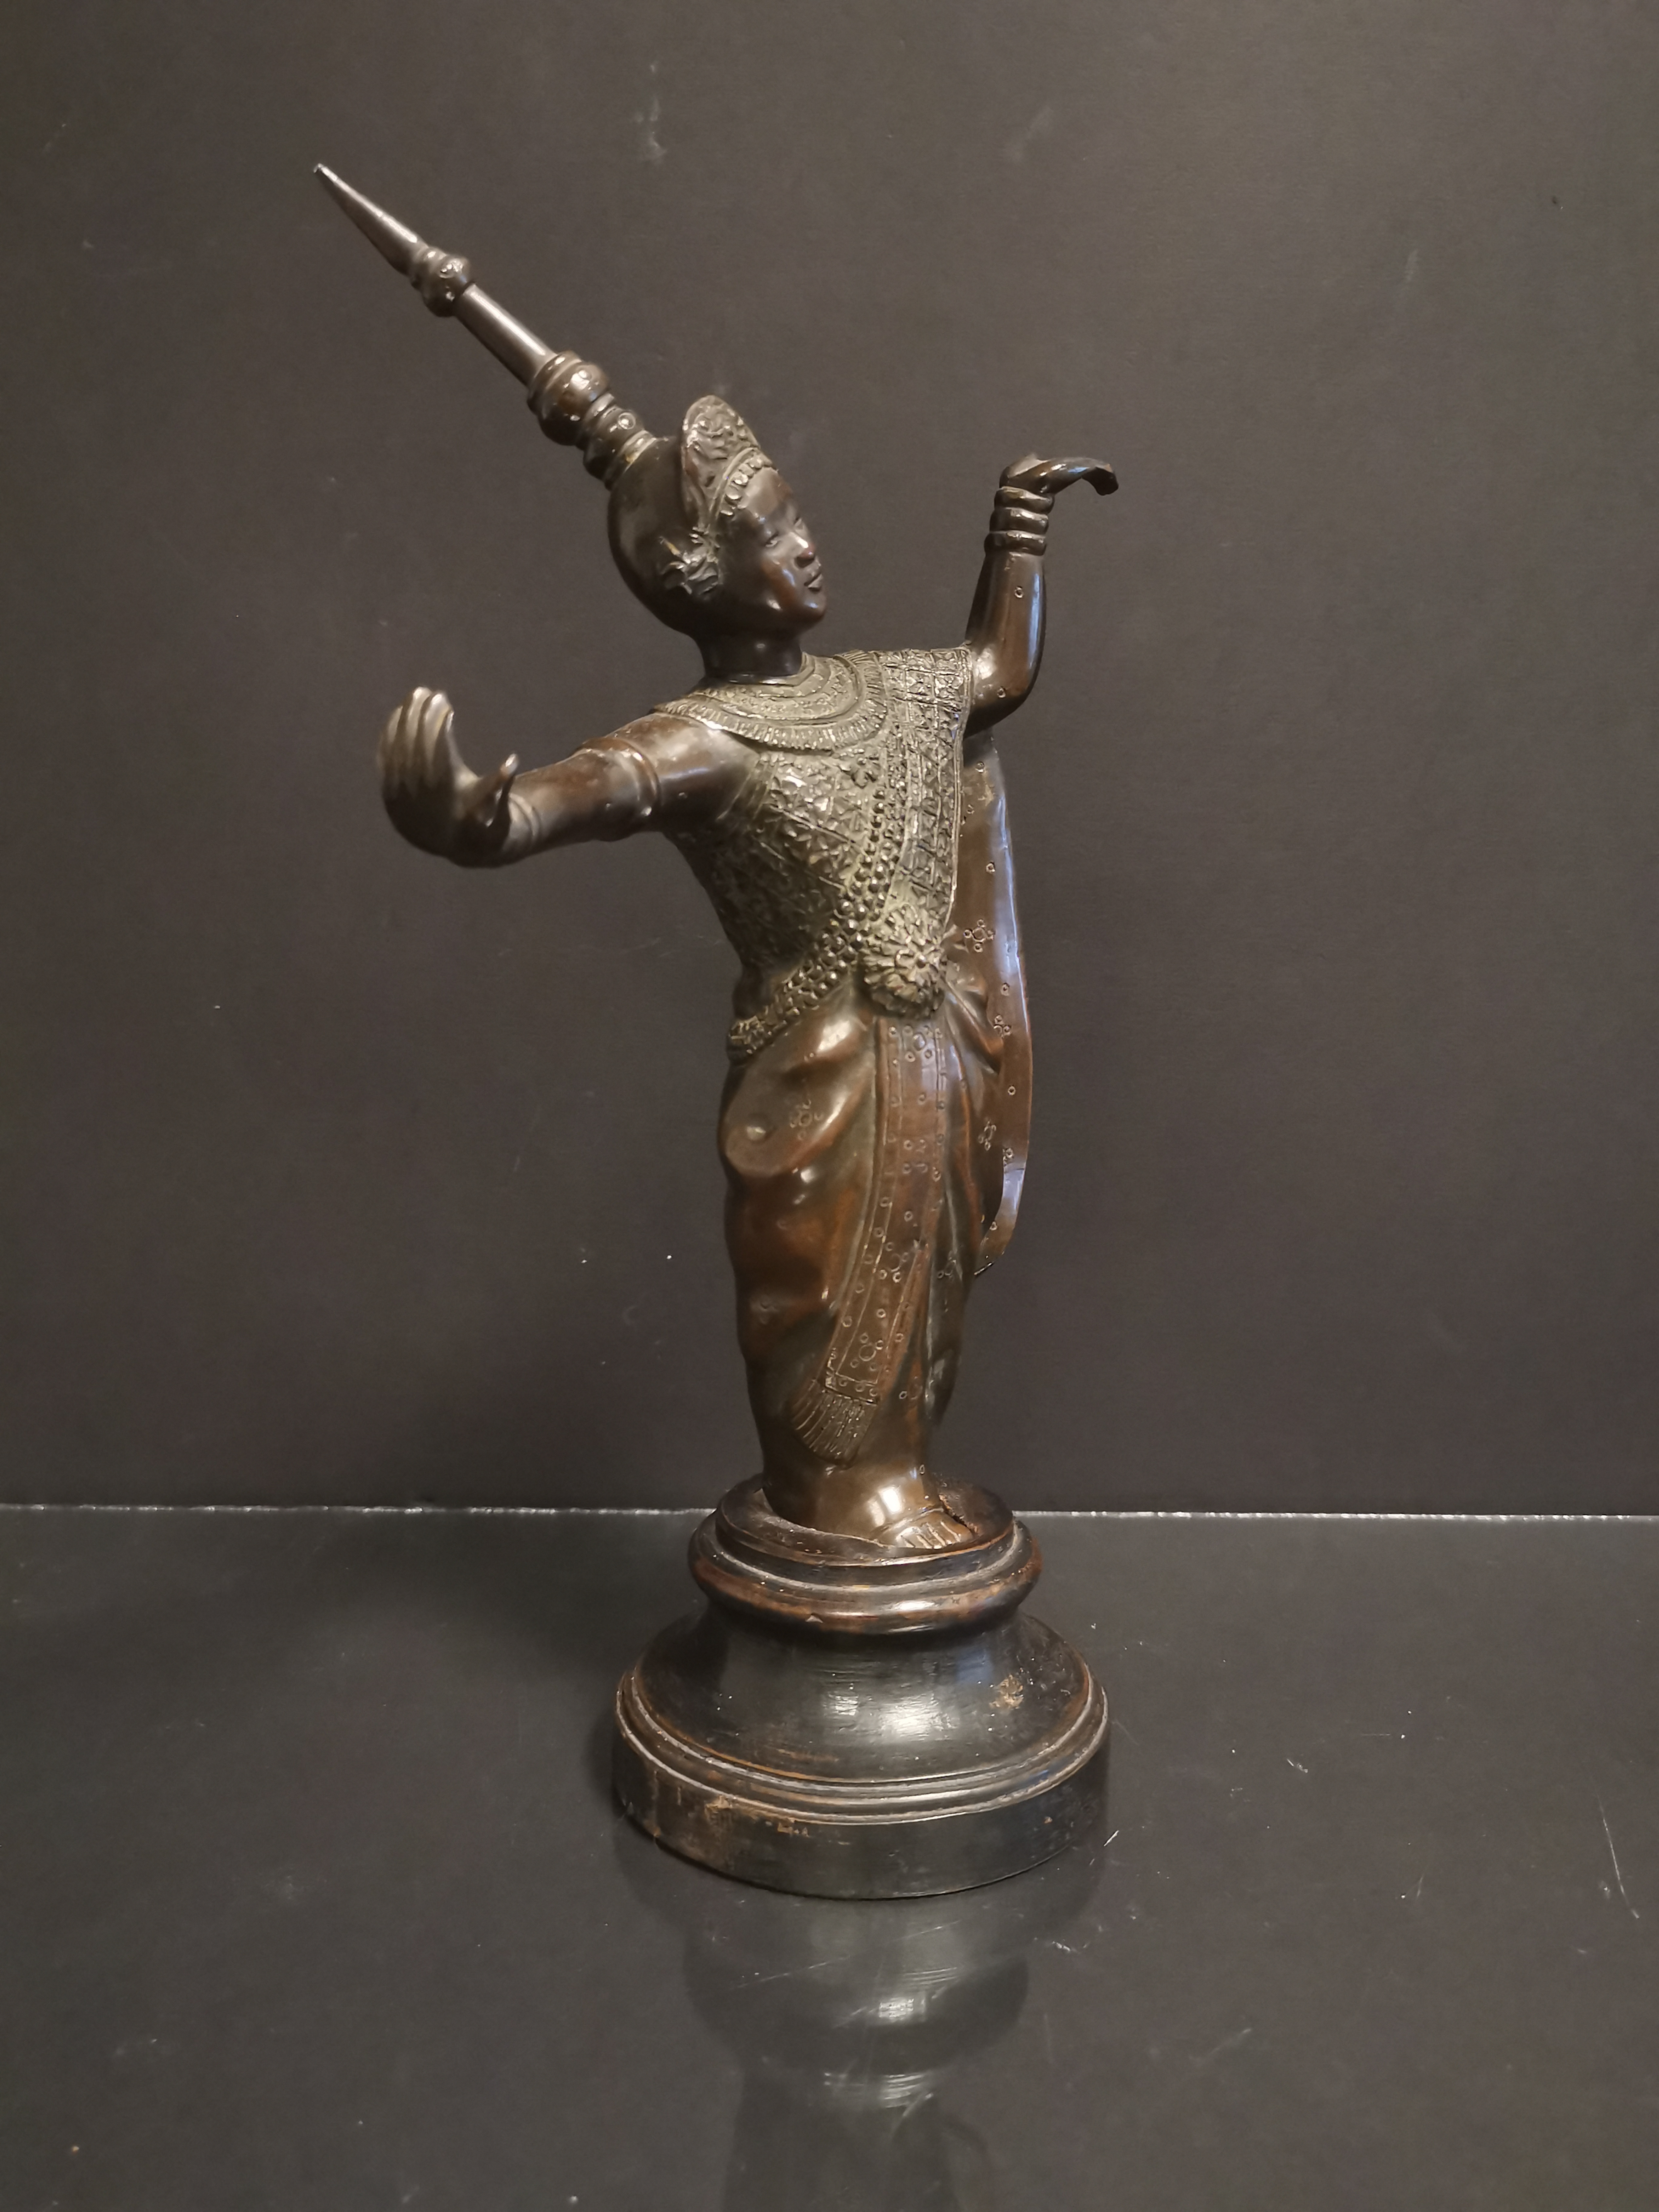 VIETNAM. Danseuse apsara le pied levé. Bronze. H : 24,5 cm sans le socle. - - Image 2 of 2